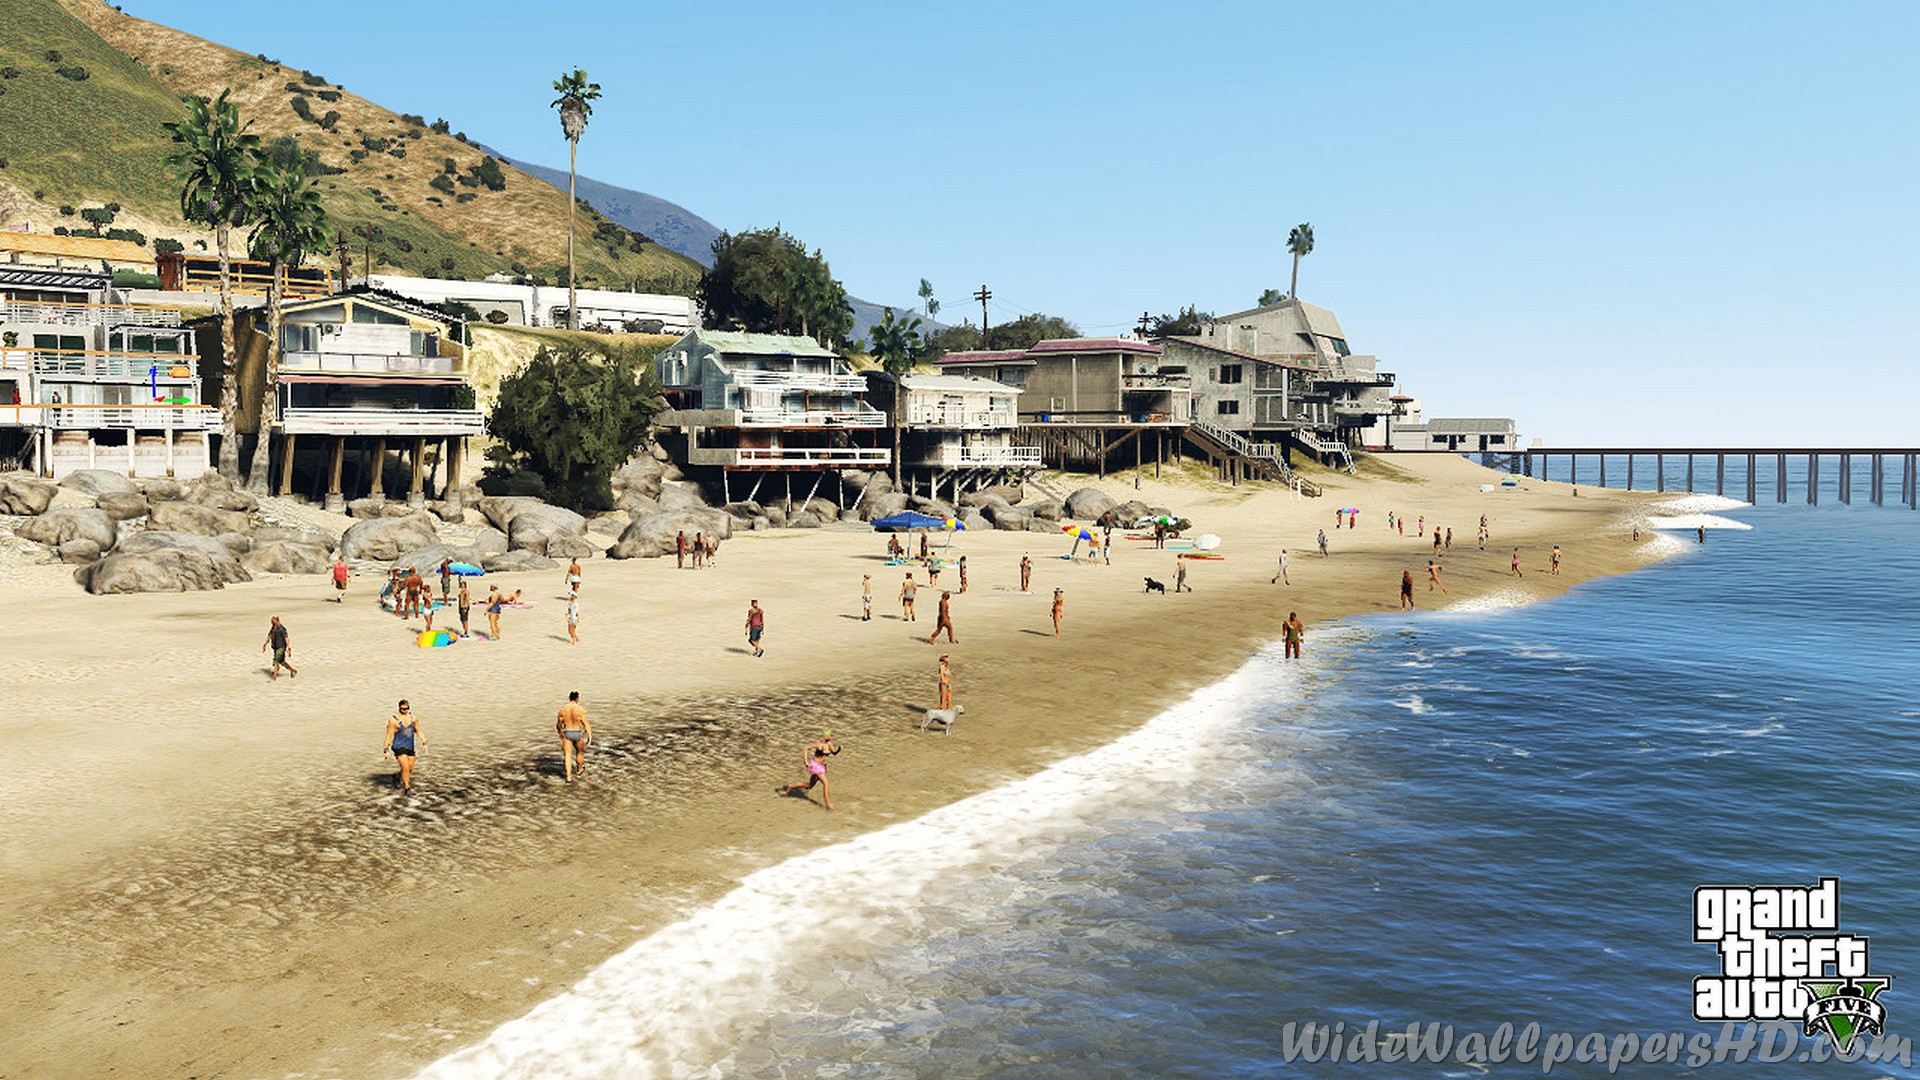 Gta 5 Beach Bum Pack Wallpaper - Grand Theft Auto V , HD Wallpaper & Backgrounds